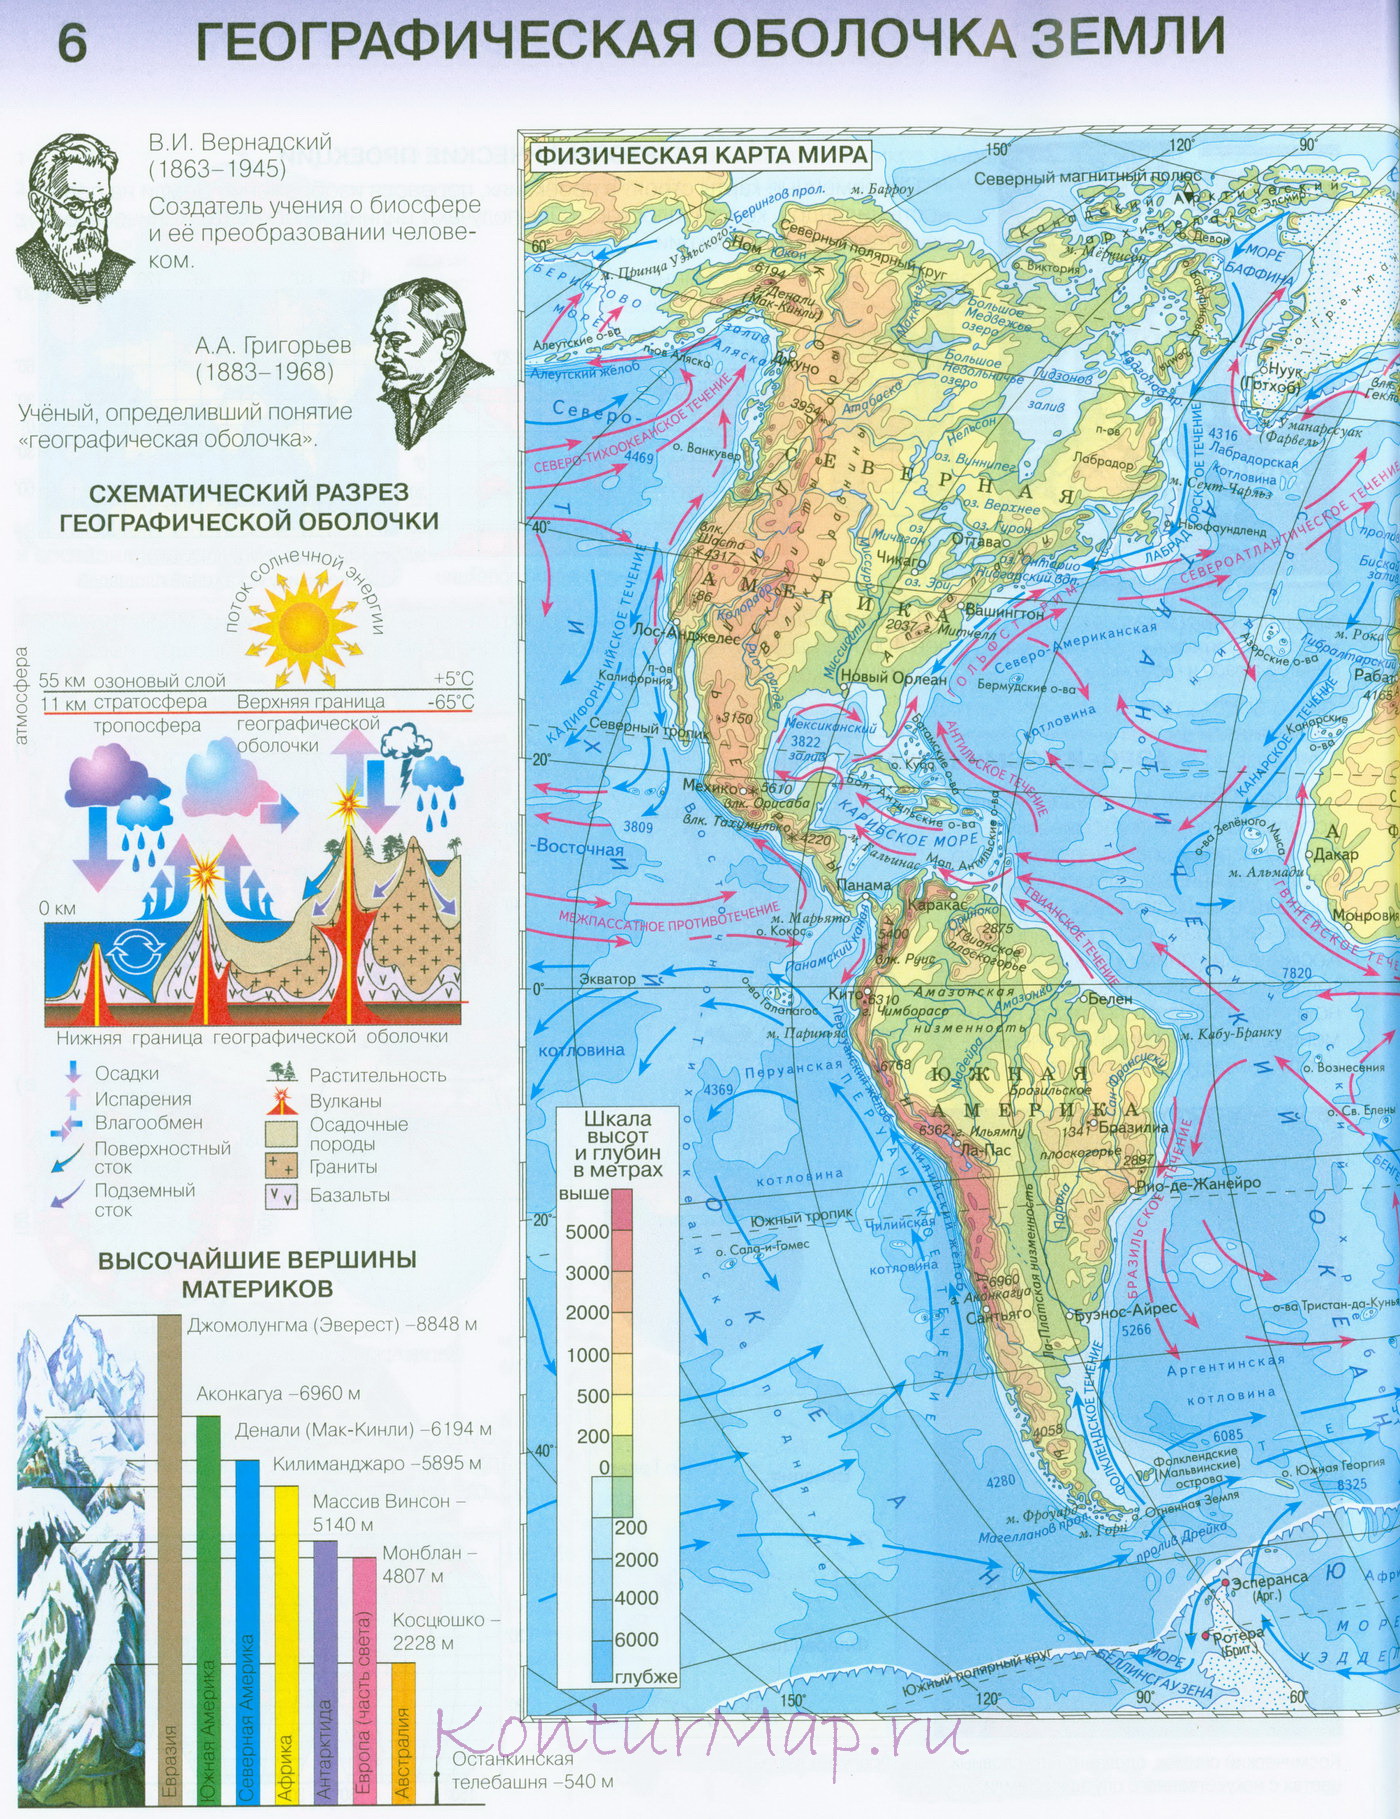 Читать онлайн география 7 класс бесплатно